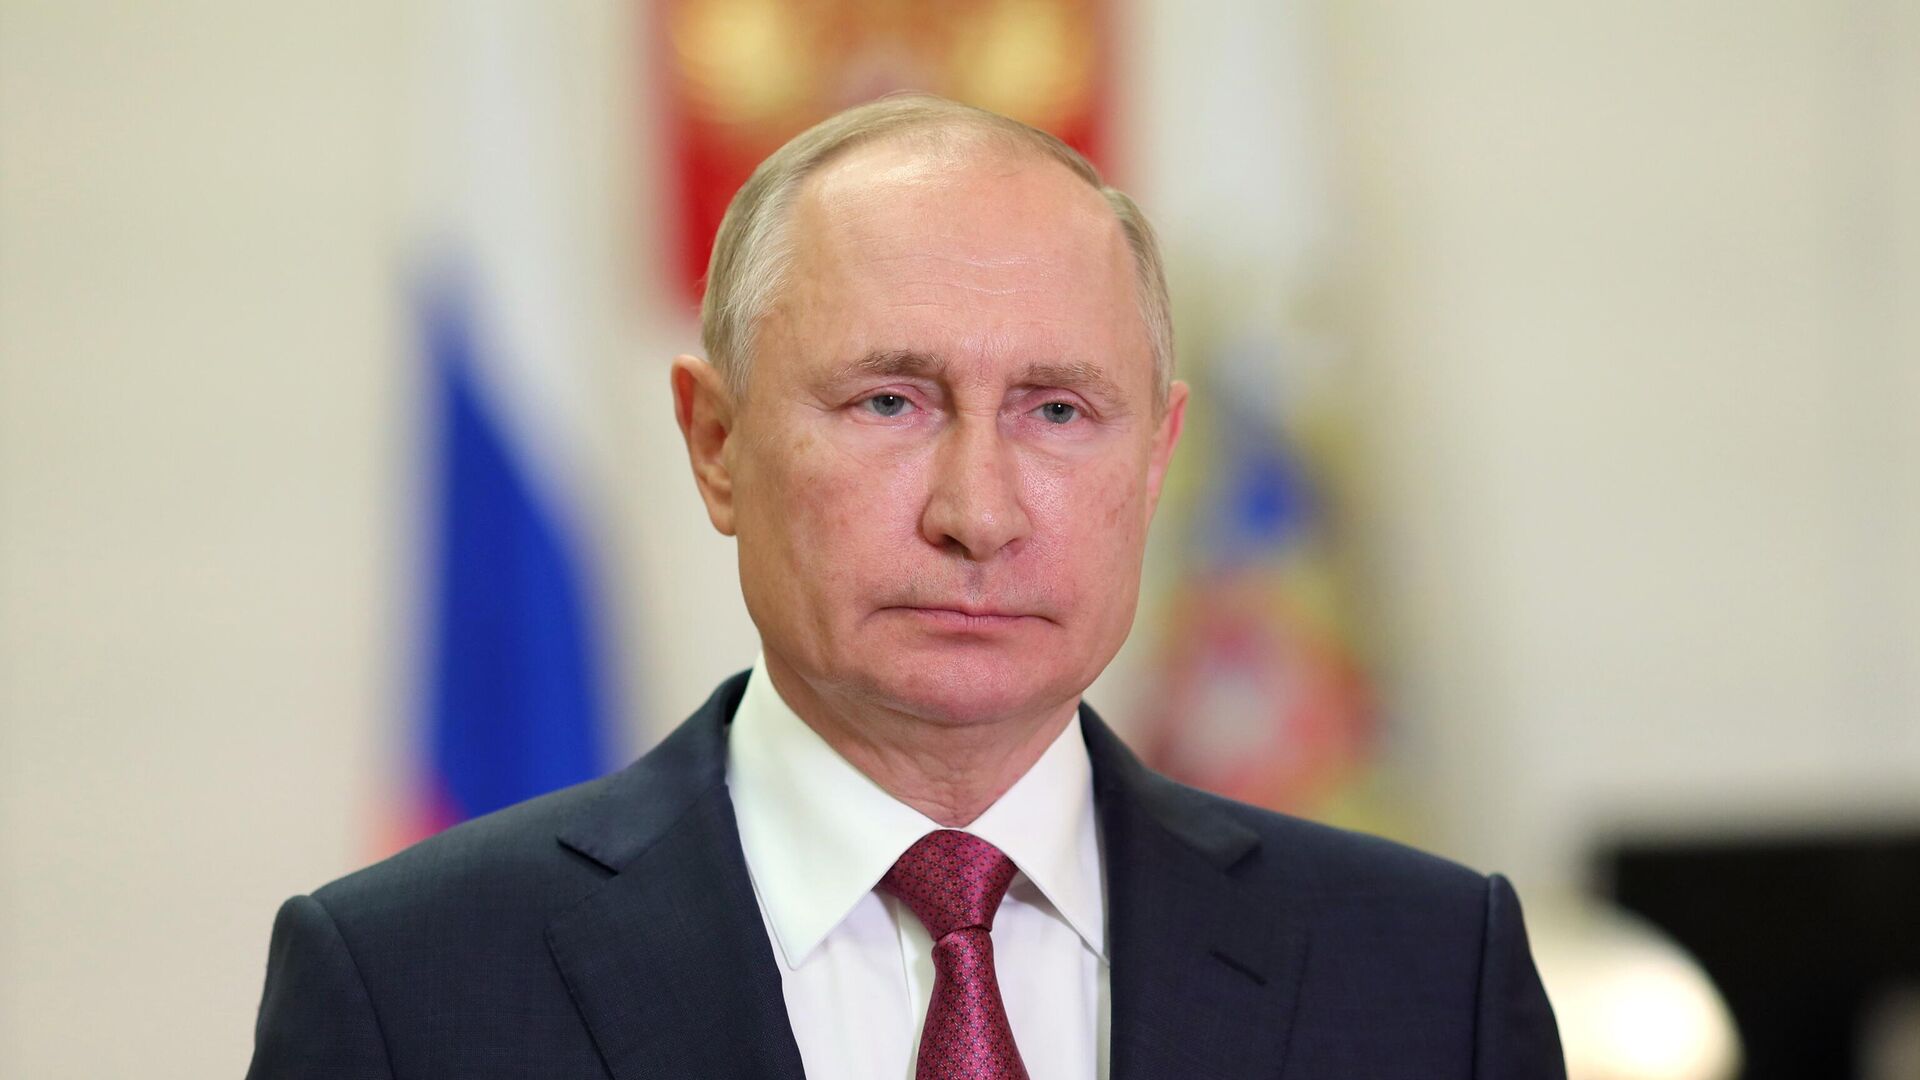 Графики выступления Путина на G20 согласовываются, заявил Песков